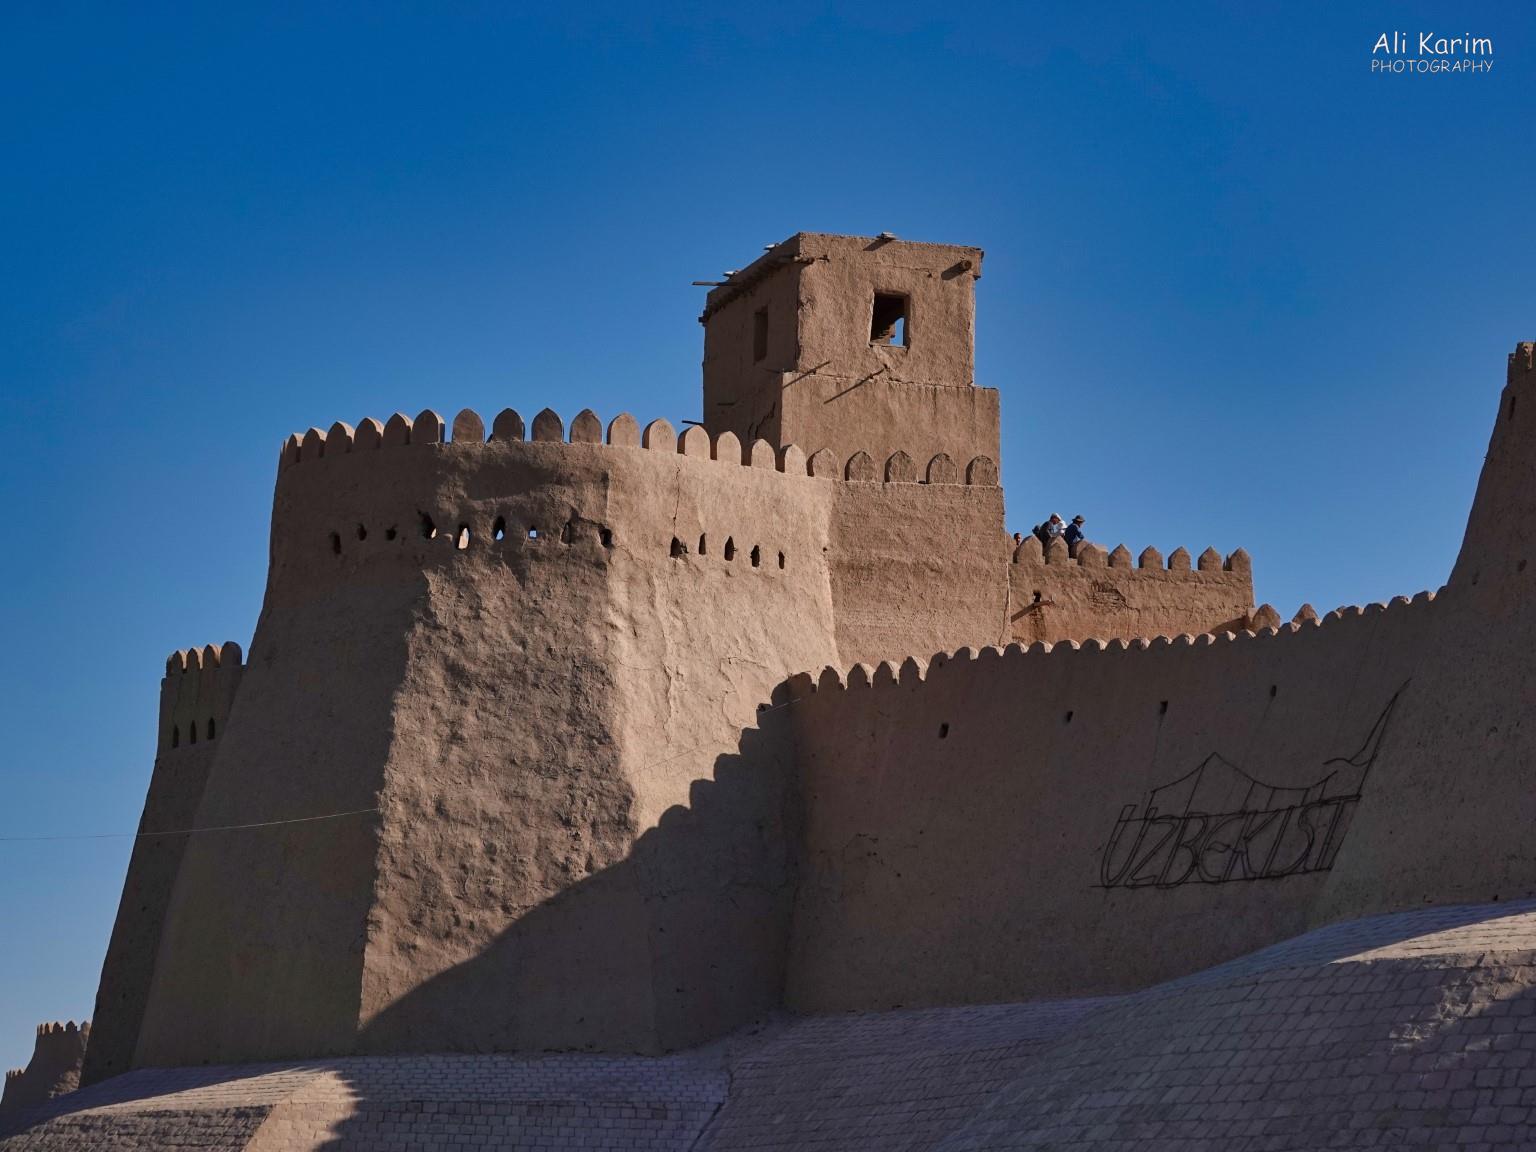 Khiva, Oct 2019, The Kunha Ark Citadel from the 12th century